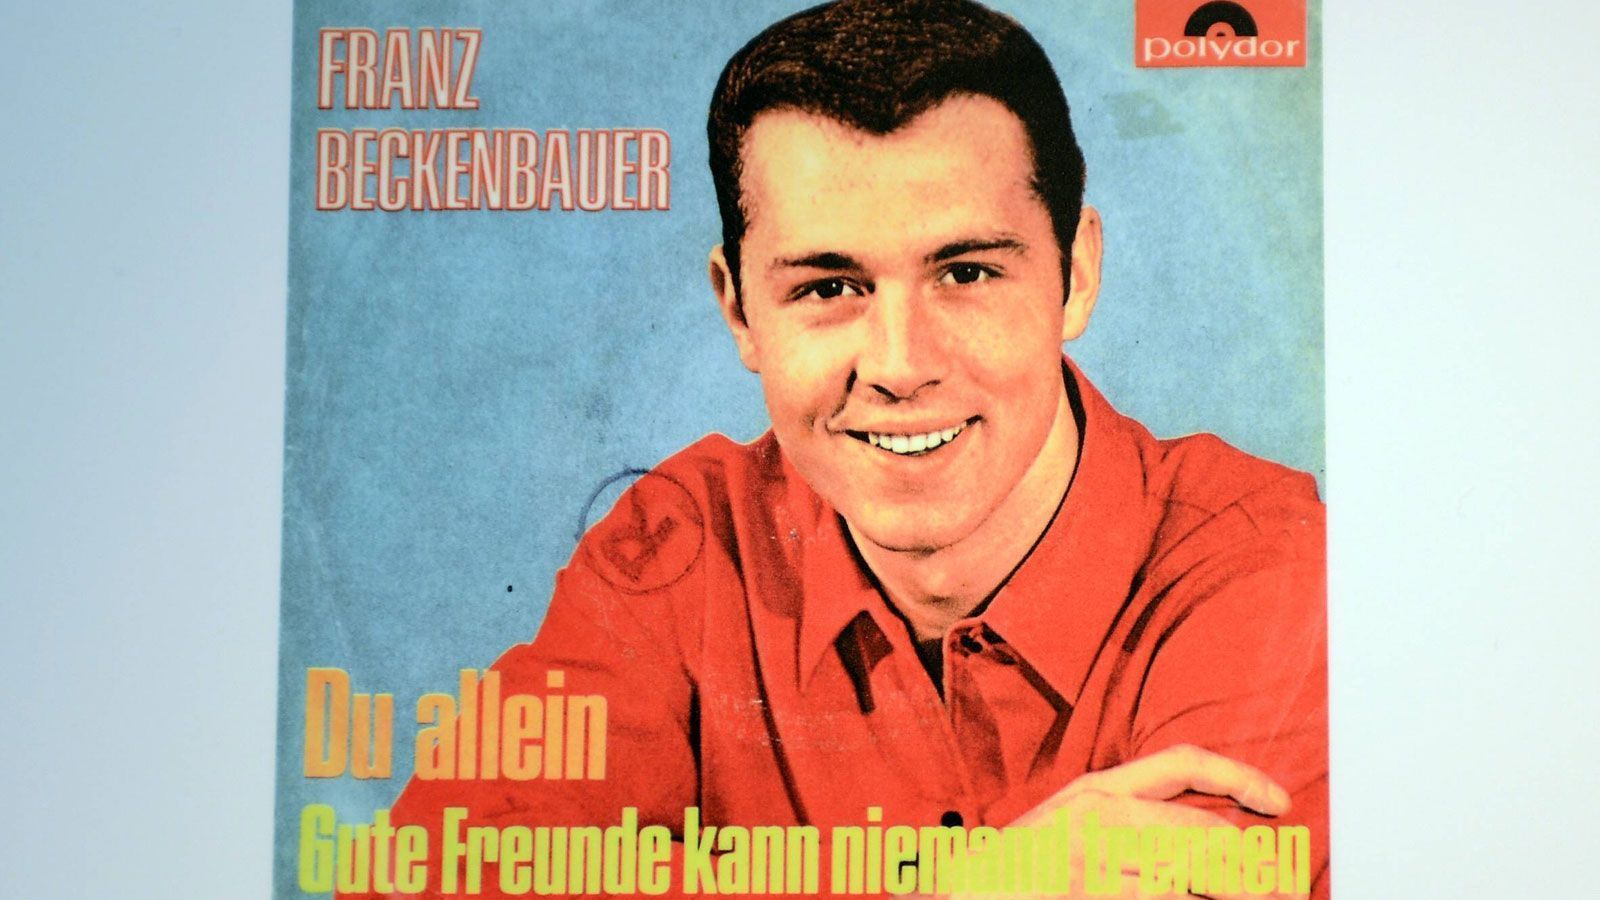 <strong>Fußballer und Sänger</strong><br>
                Unvergessen ist Franz Beckenbauers Song "Gute Freunde kann niemand trennen". Bis auf Platz 31 in den deutschen Charts schaffte es der Kaiser 1966 als Schlagersänger. Hier ist das Plattencover zu sehen.
